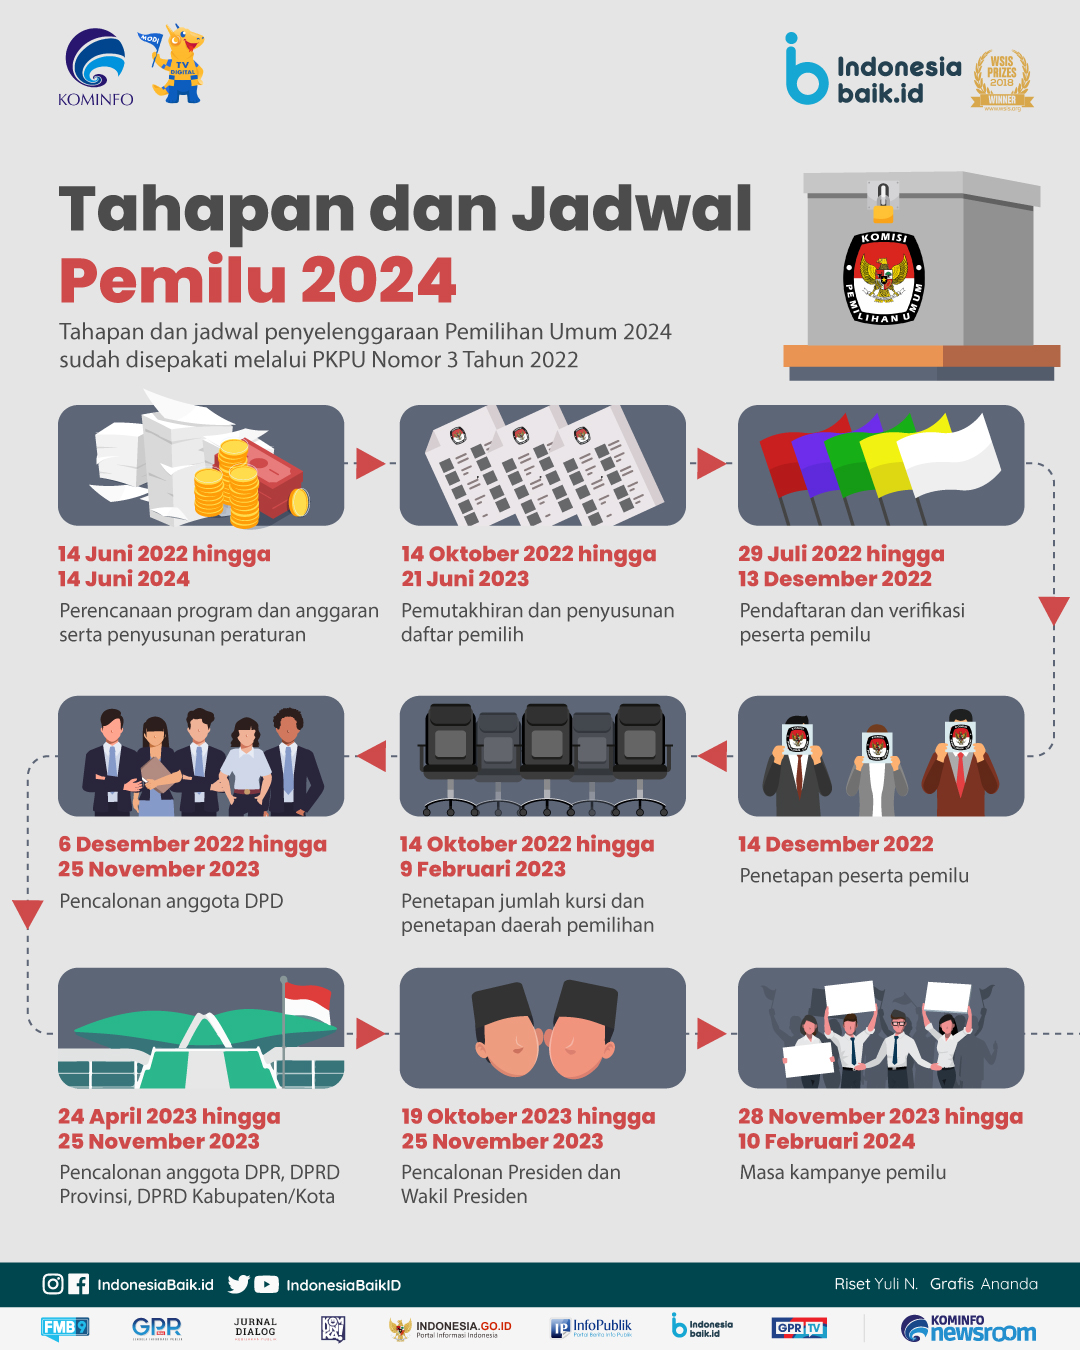 Tahapan dan Jadwal Pemilu 2024 | Indonesia Baik